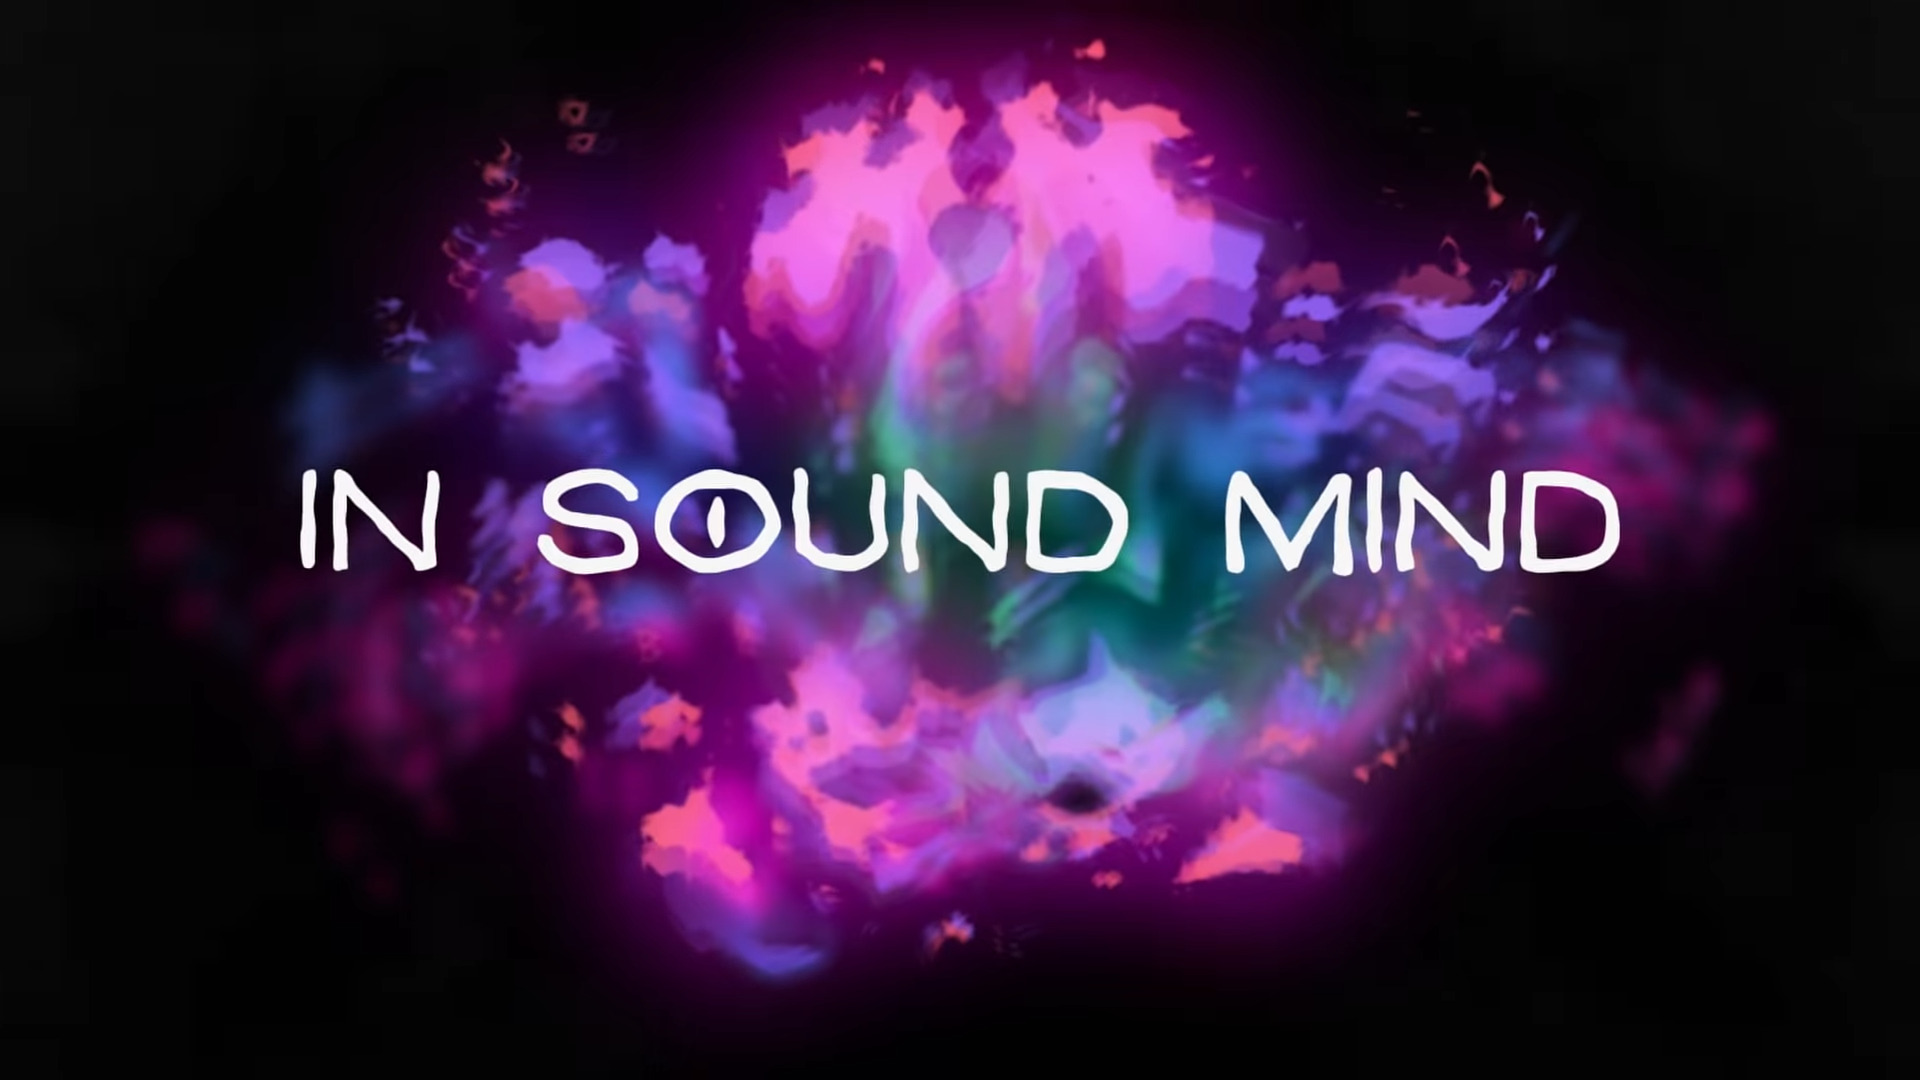 in sound mind desmond